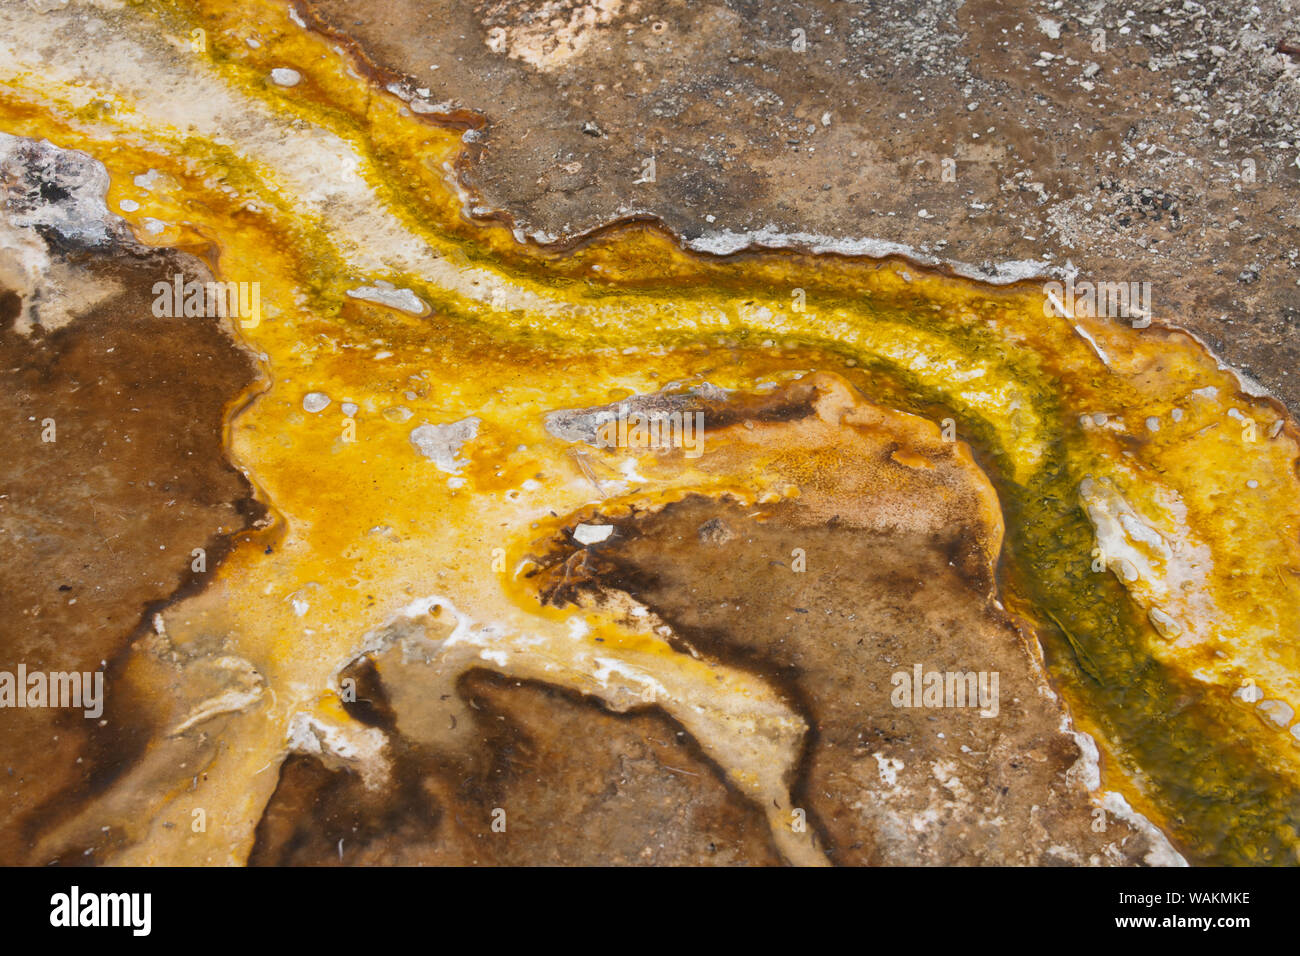 El Parque Nacional Yellowstone, Wyoming, Estados Unidos. Bacterias termales mat. Foto de stock